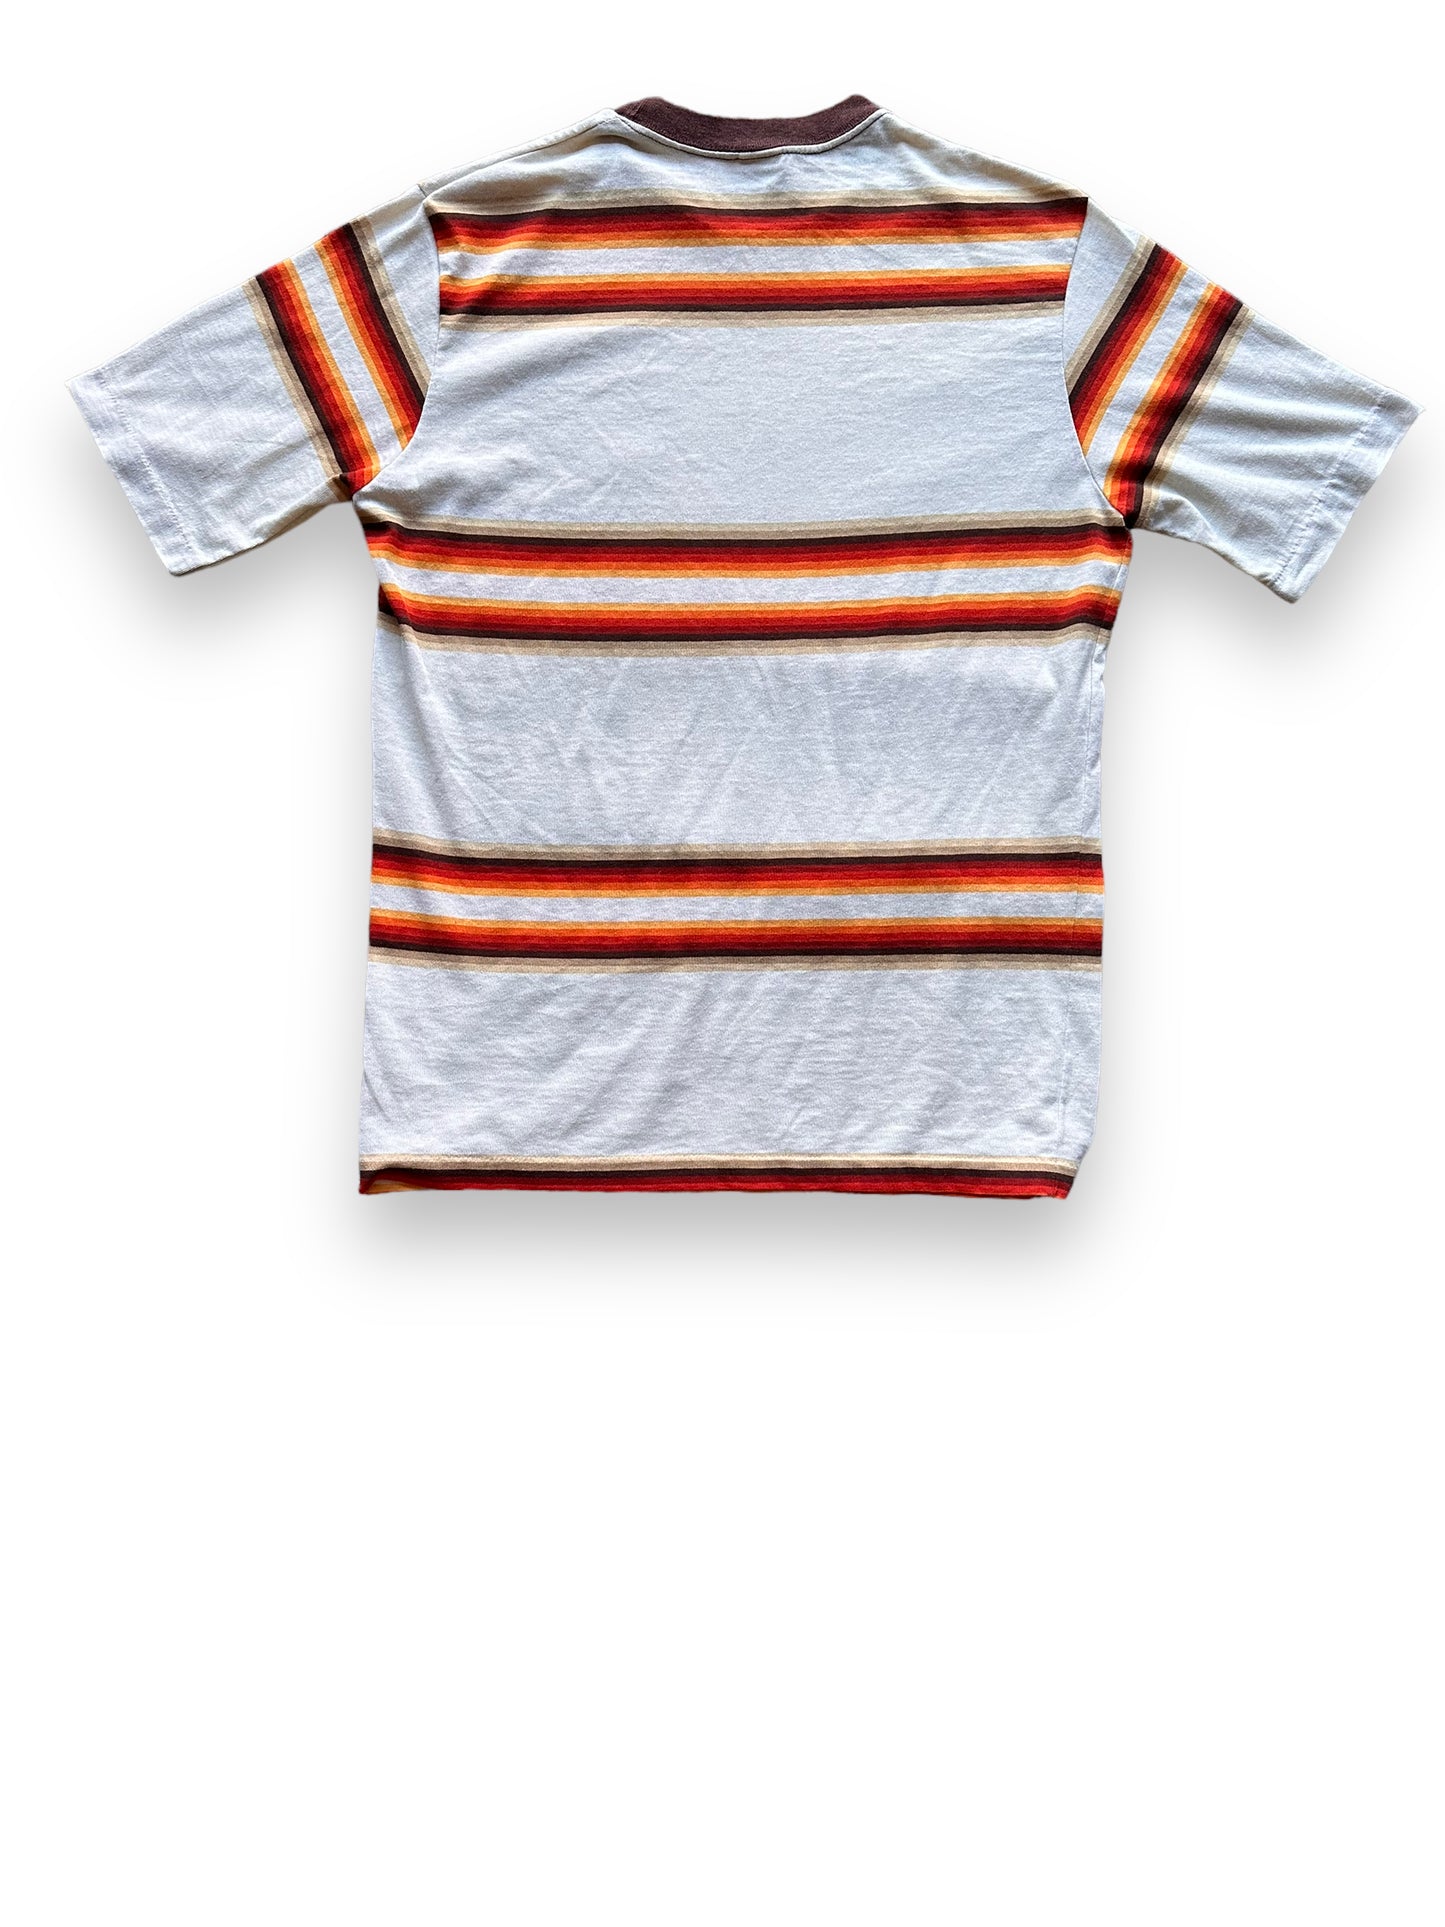 Rear View of Vintage Jantzen Striped Shirt SZ M | Vintage Striped Shirt Seattle | Barn Owl Vintage Seattle